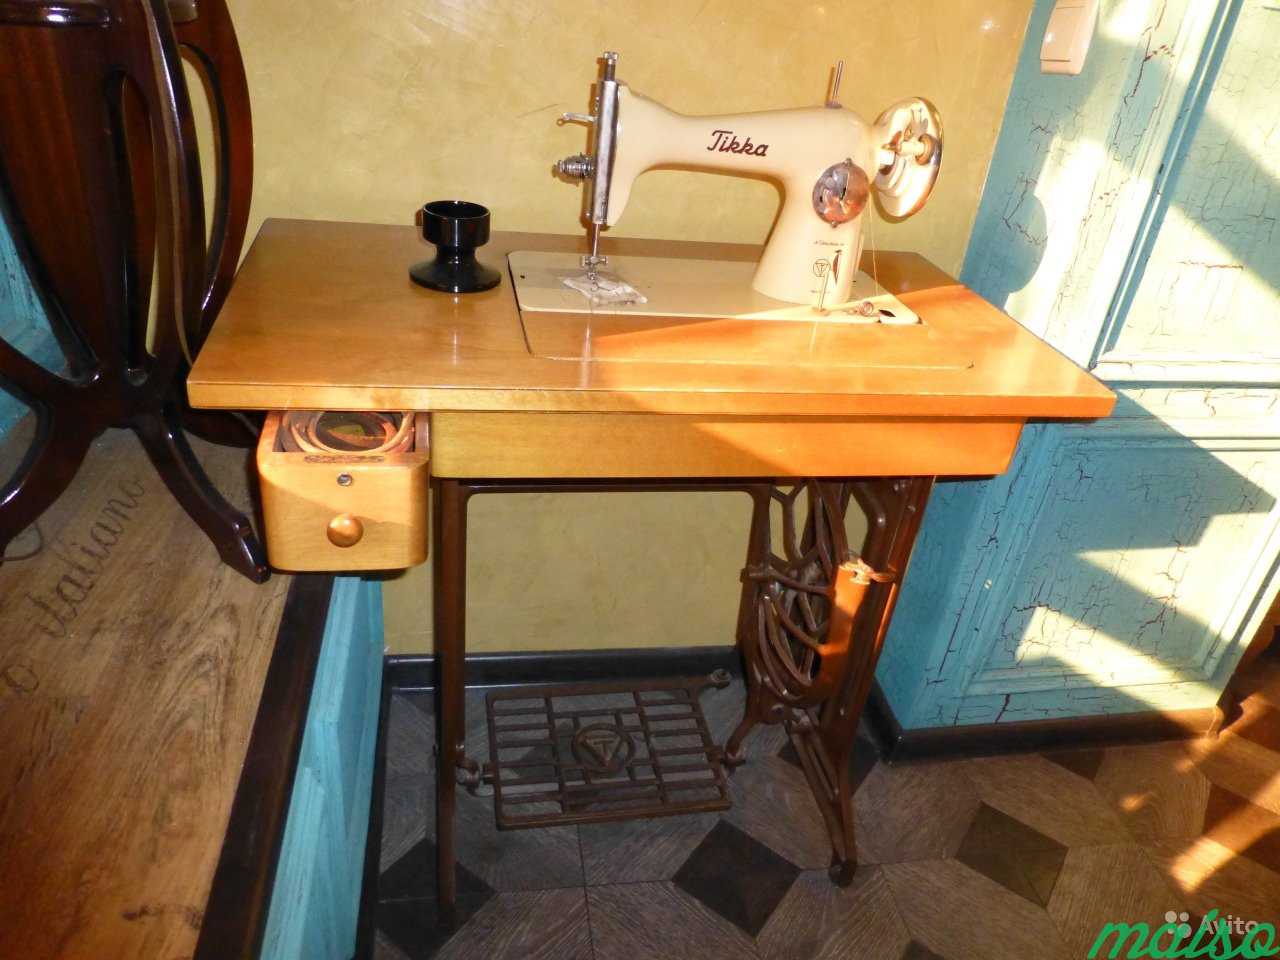 Швейная машинка Tikka в Москве. Фото 1